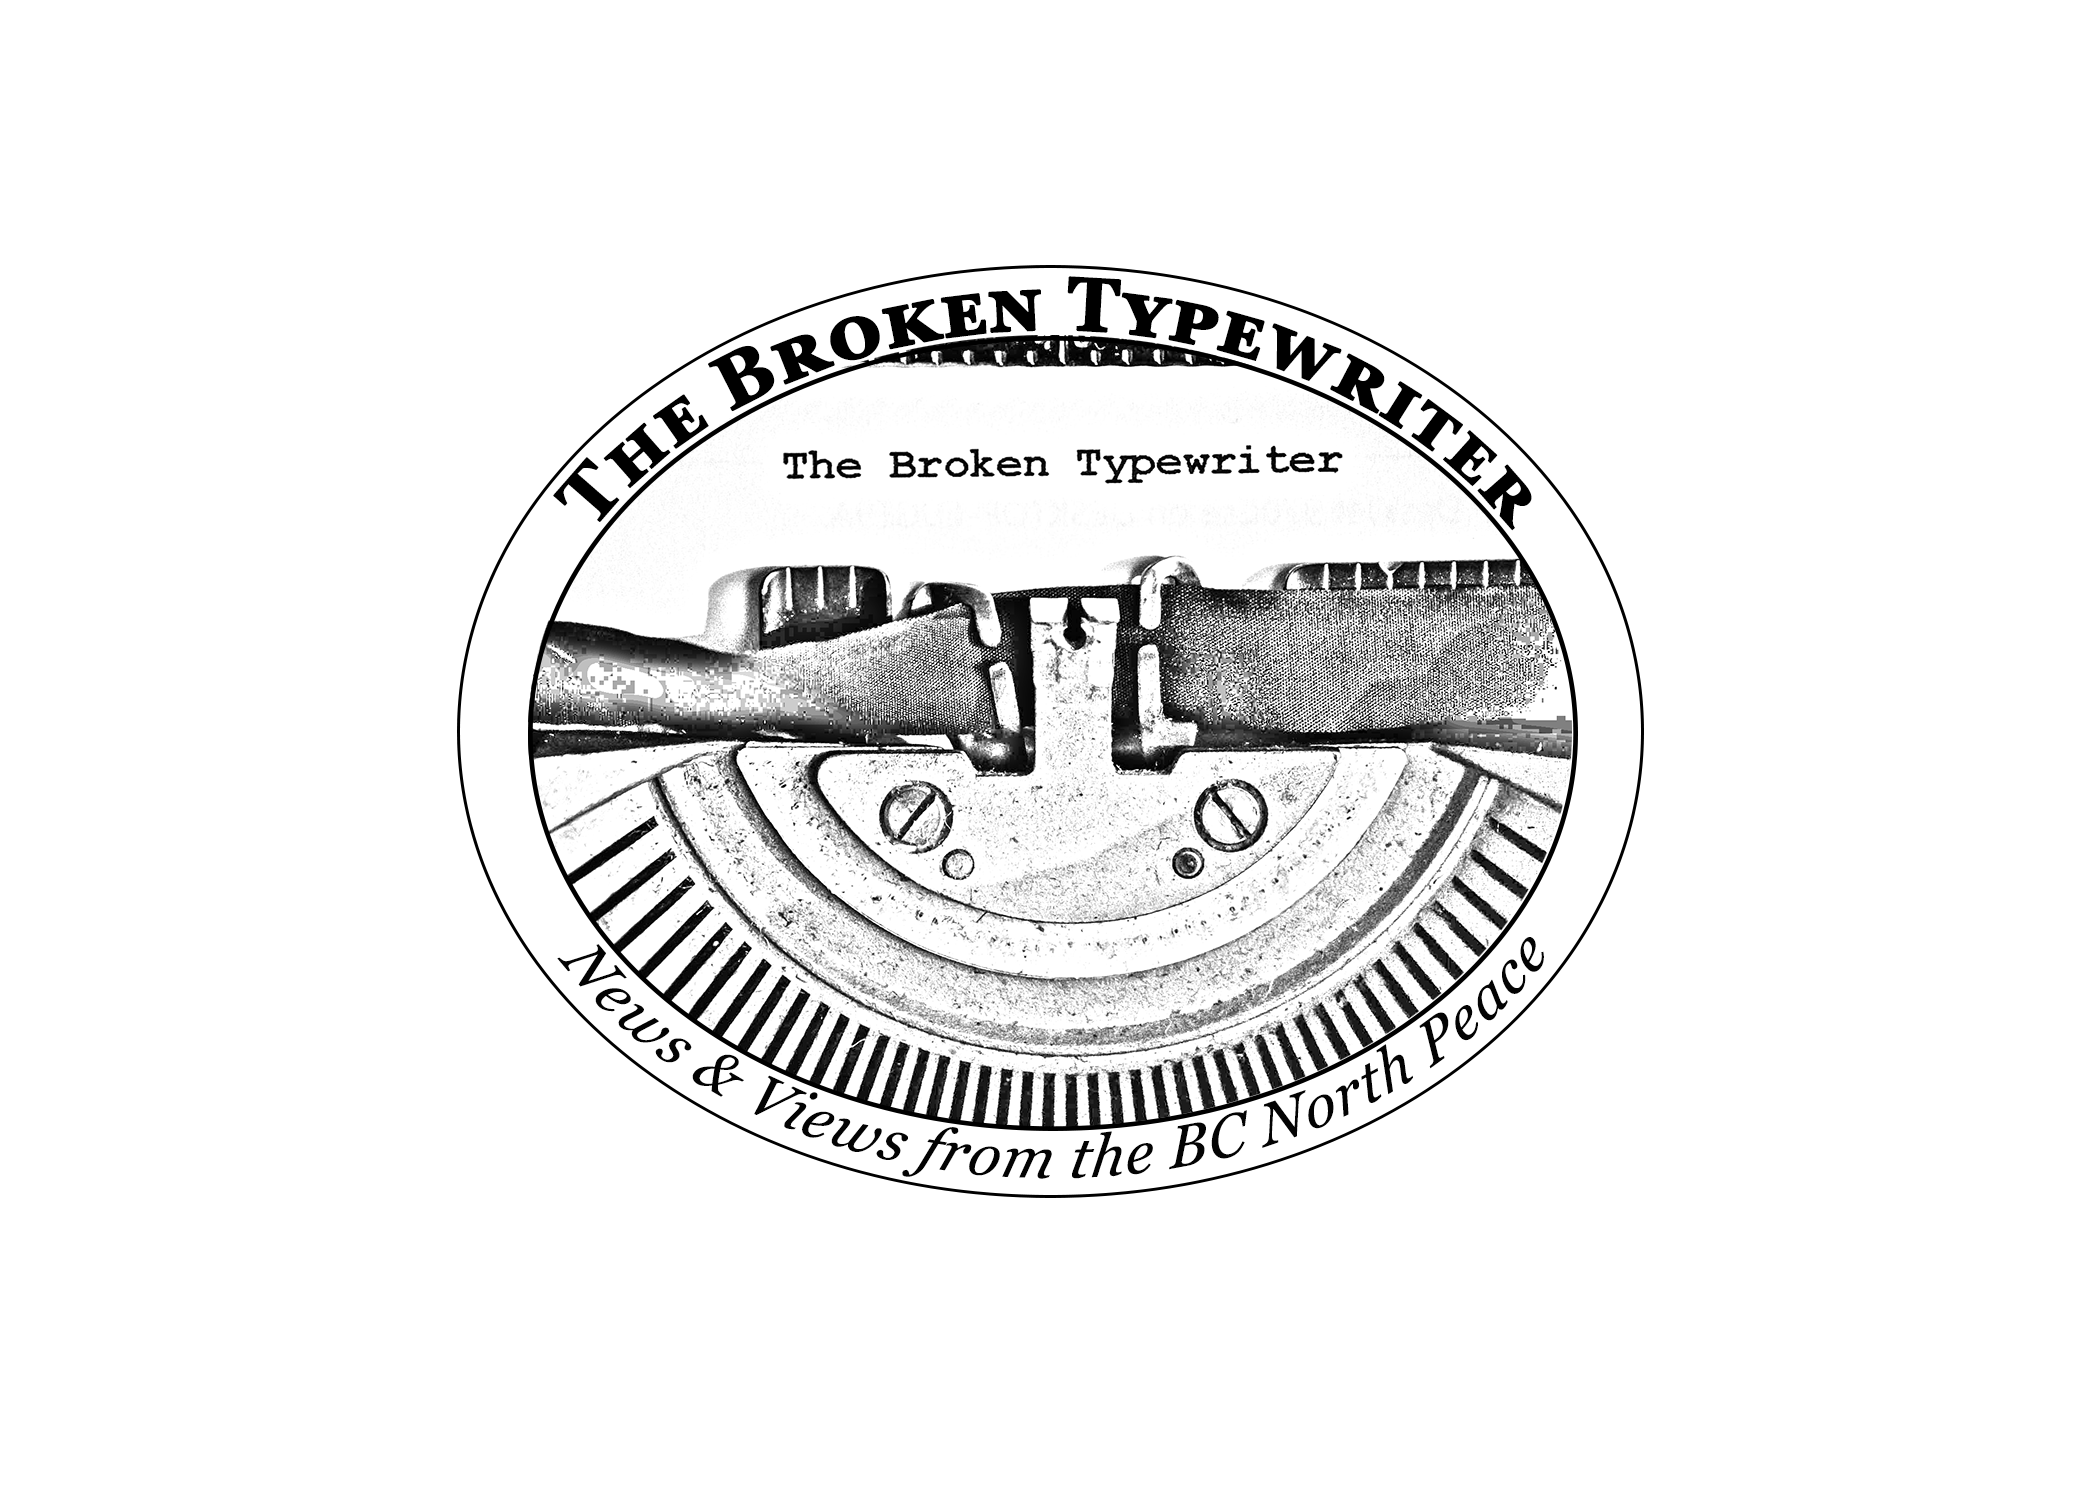 The Broken Typewriter